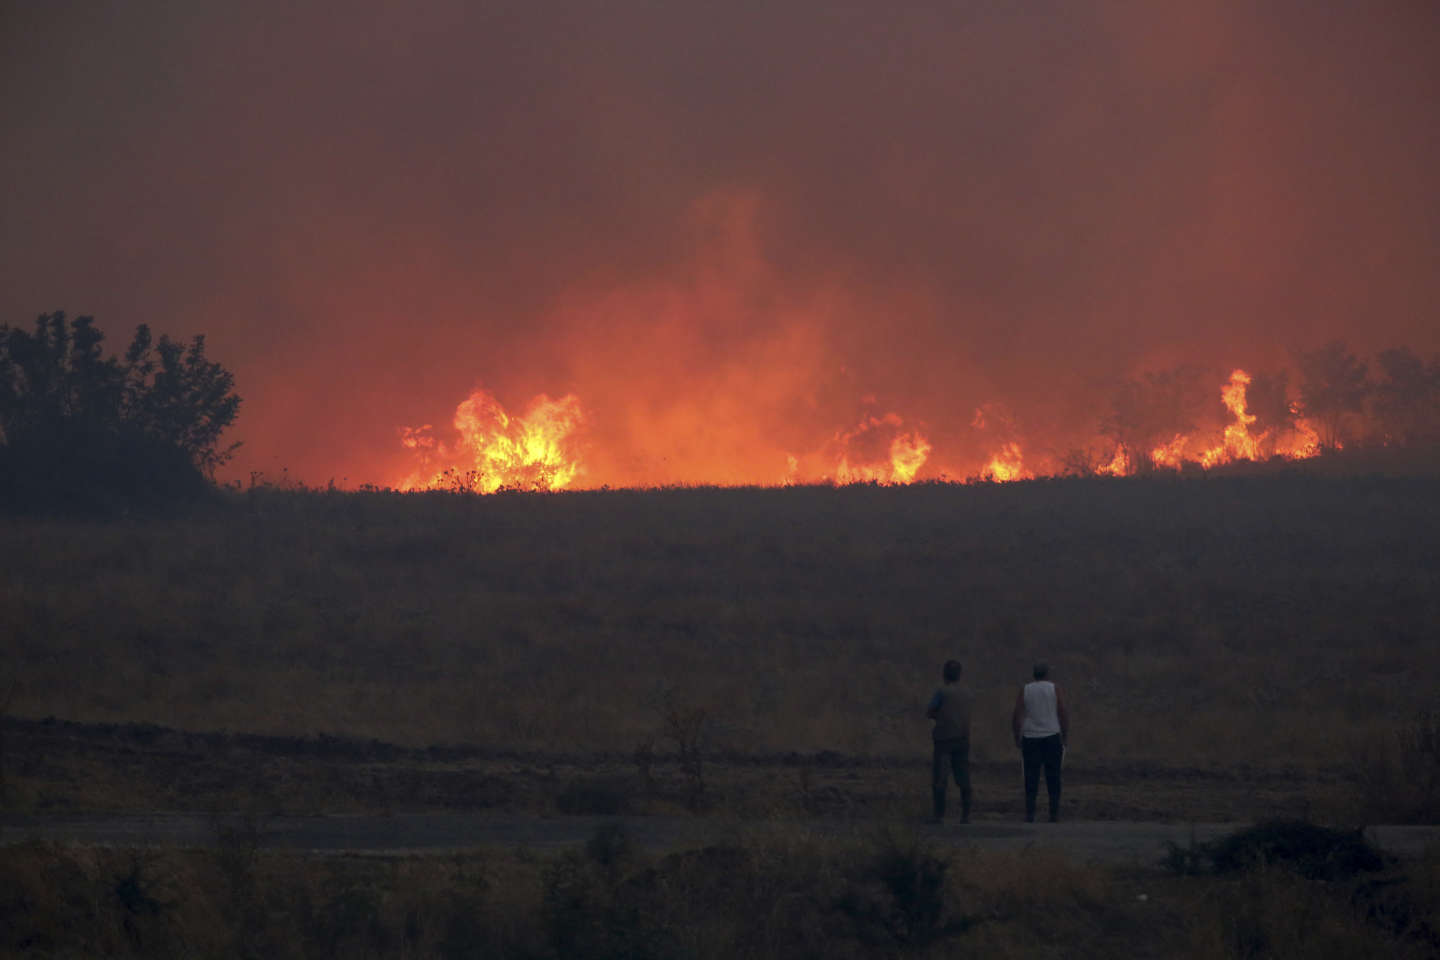 Incendies en Grèce : de nouveaux feux dans le centre du pays provoquent la mort d’une personne